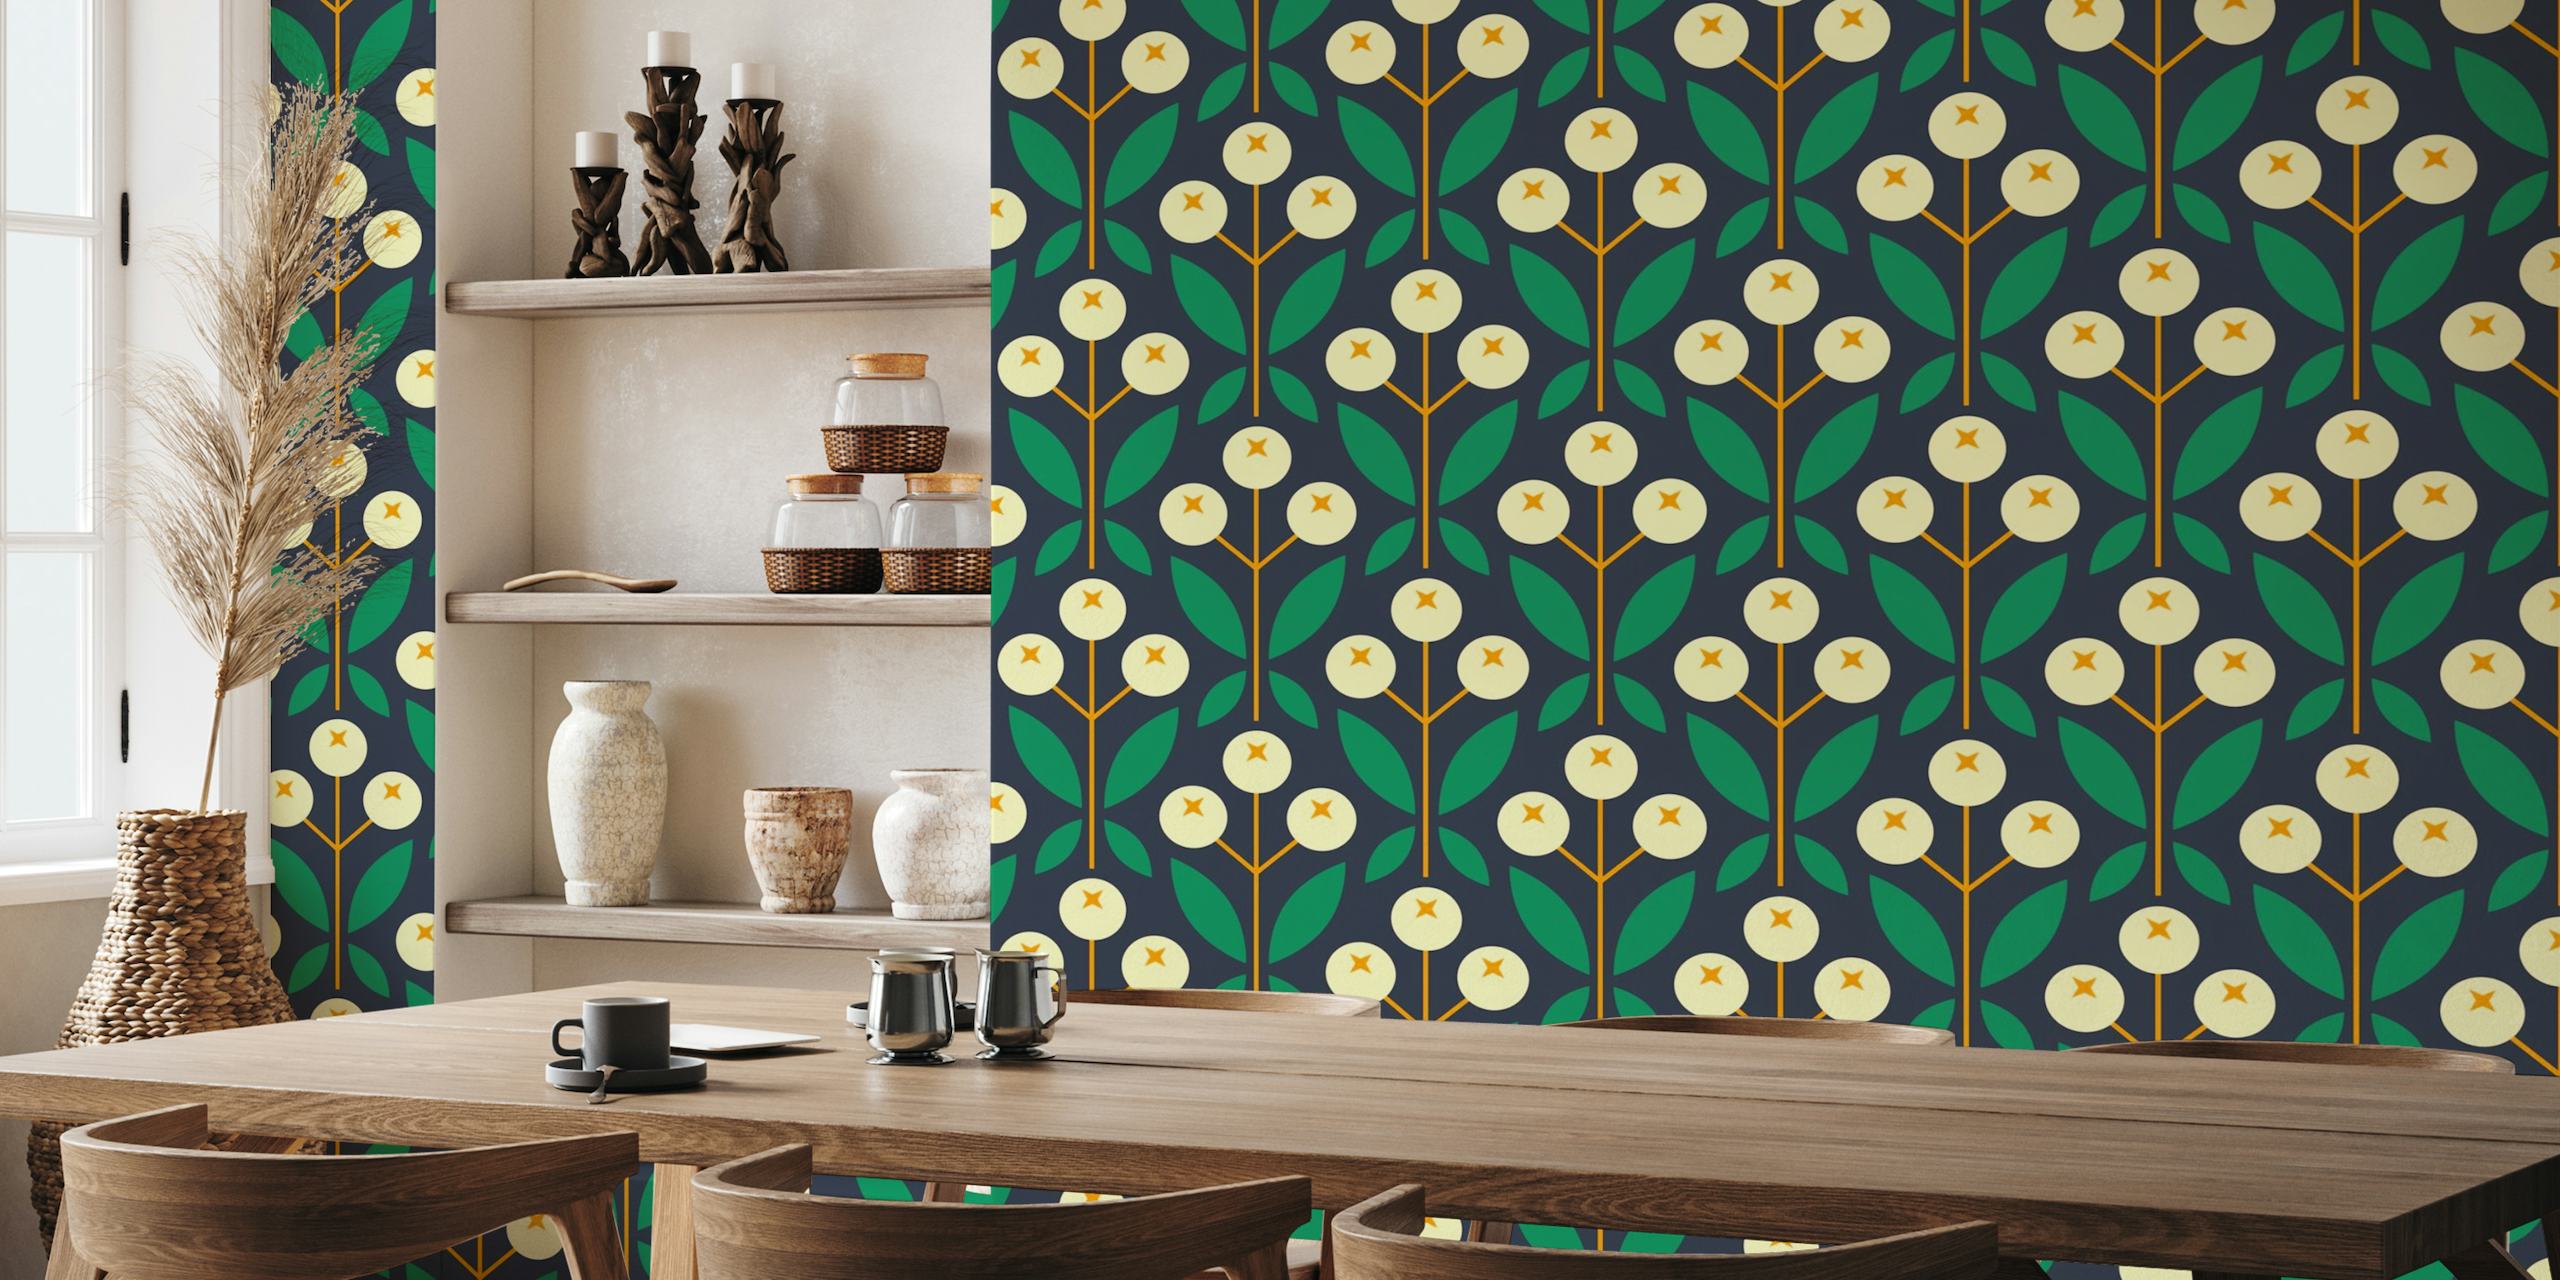 Muurschildering met geometrisch patroon met bessen en bladeren in marineblauw, groen en mosterdgeel